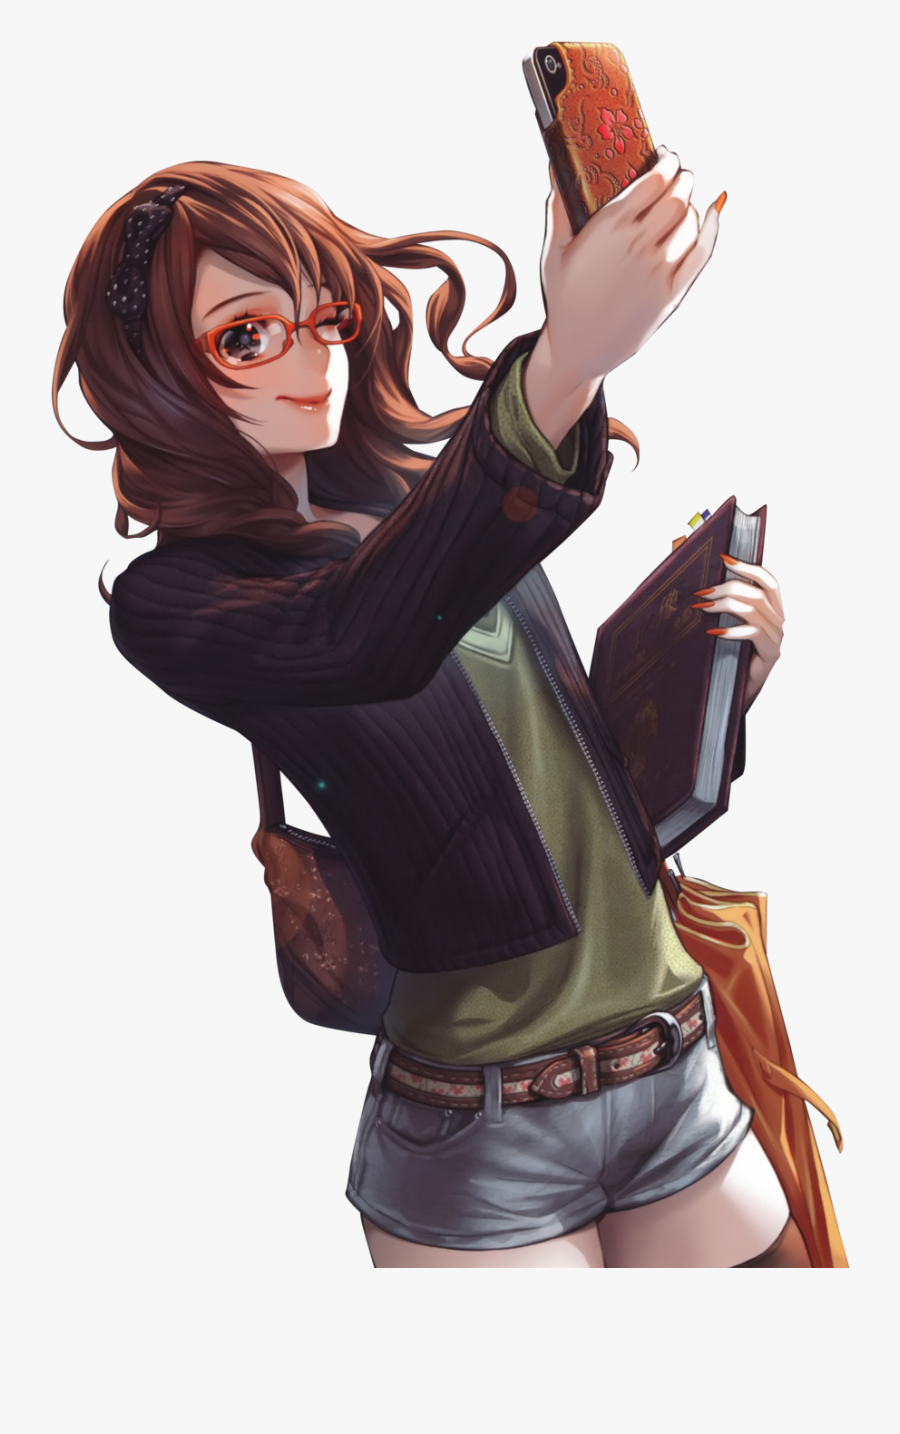 Brunette Manga Girl With Glasses - Anime Girl Brown Hair, Transparent Clipart